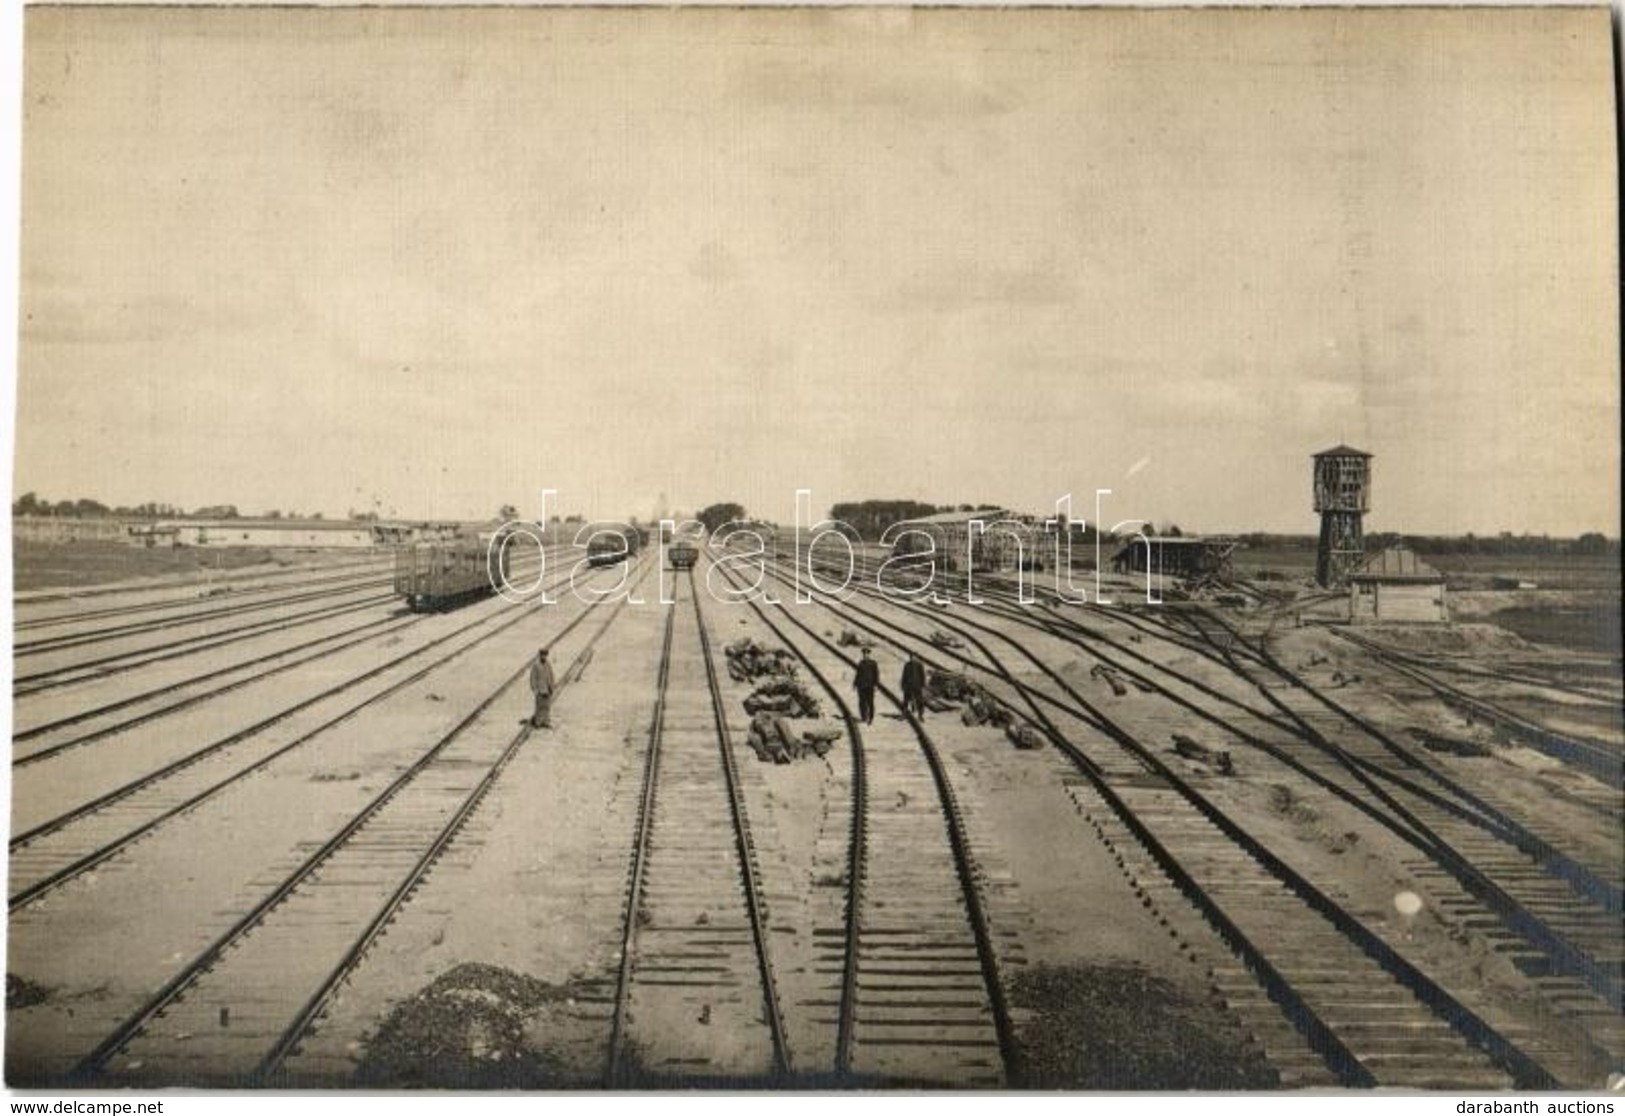 * T2 1916 Pozerunai, Poscherun; Bahnhof / Railway Station Construction. Photo - Ohne Zuordnung